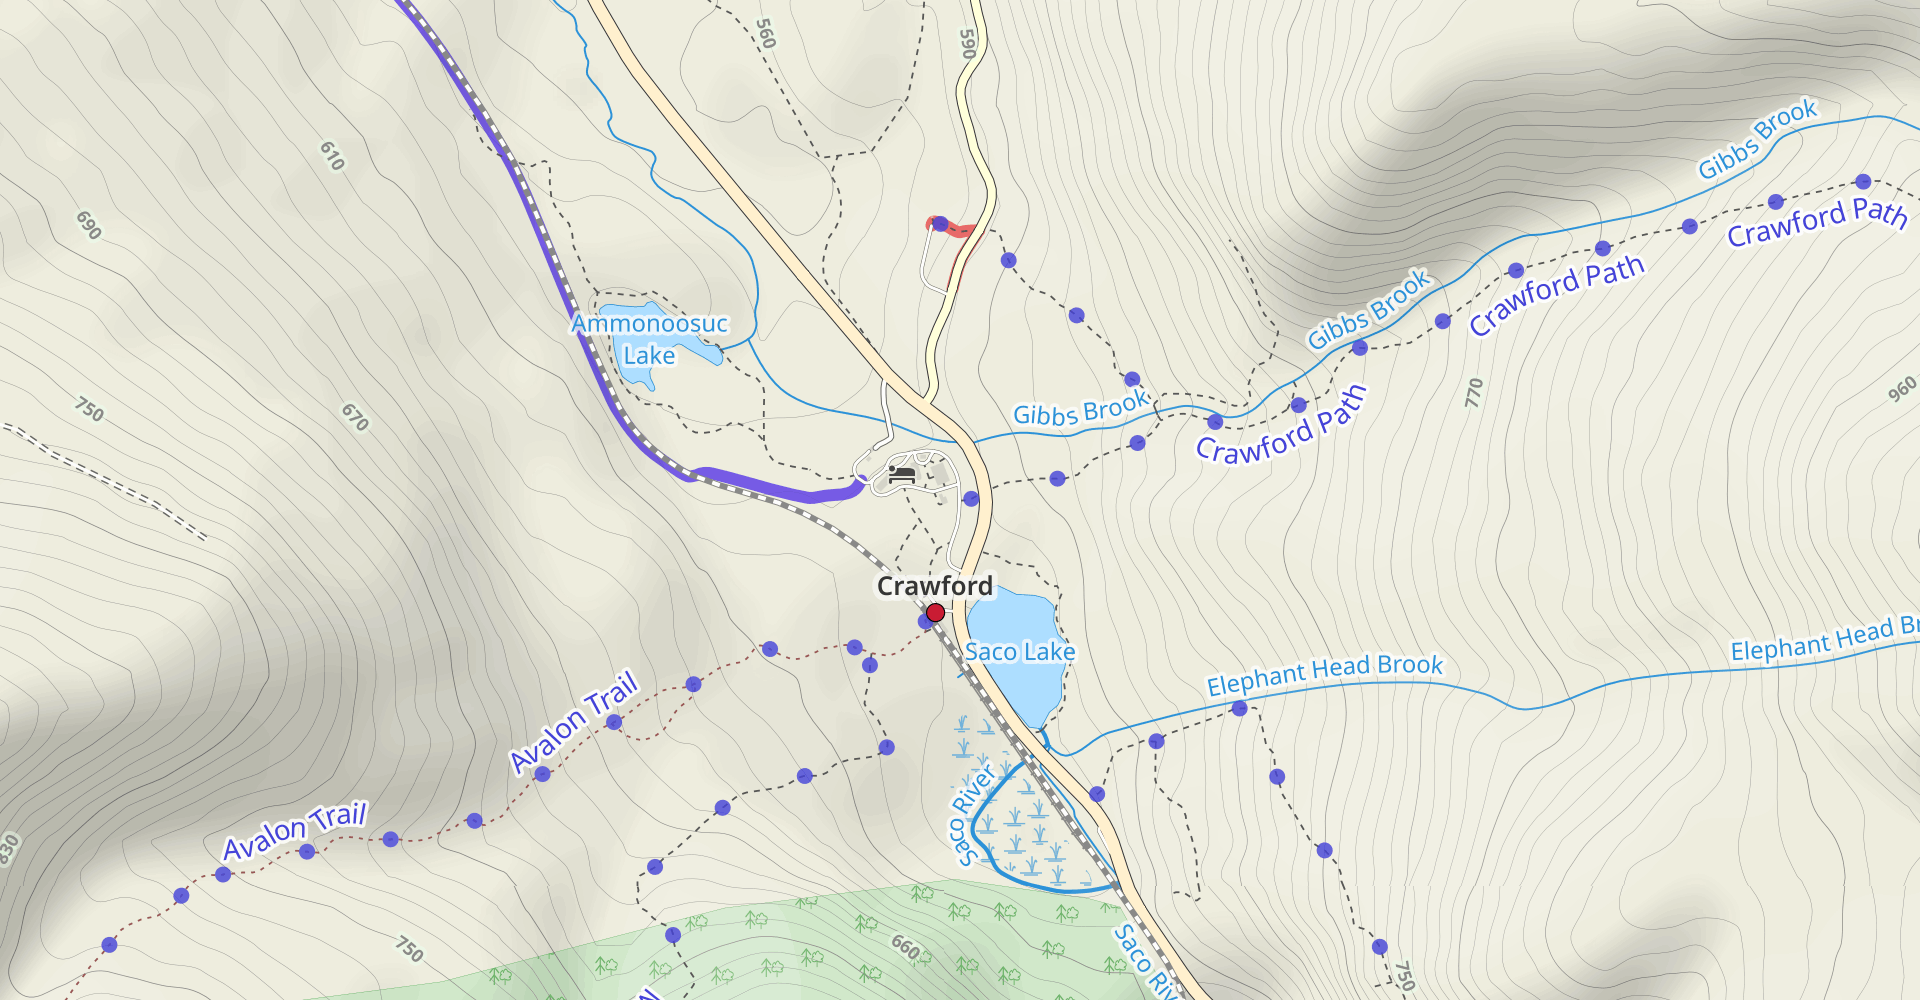 Mount Pierce, Jackson, and Webster Loop